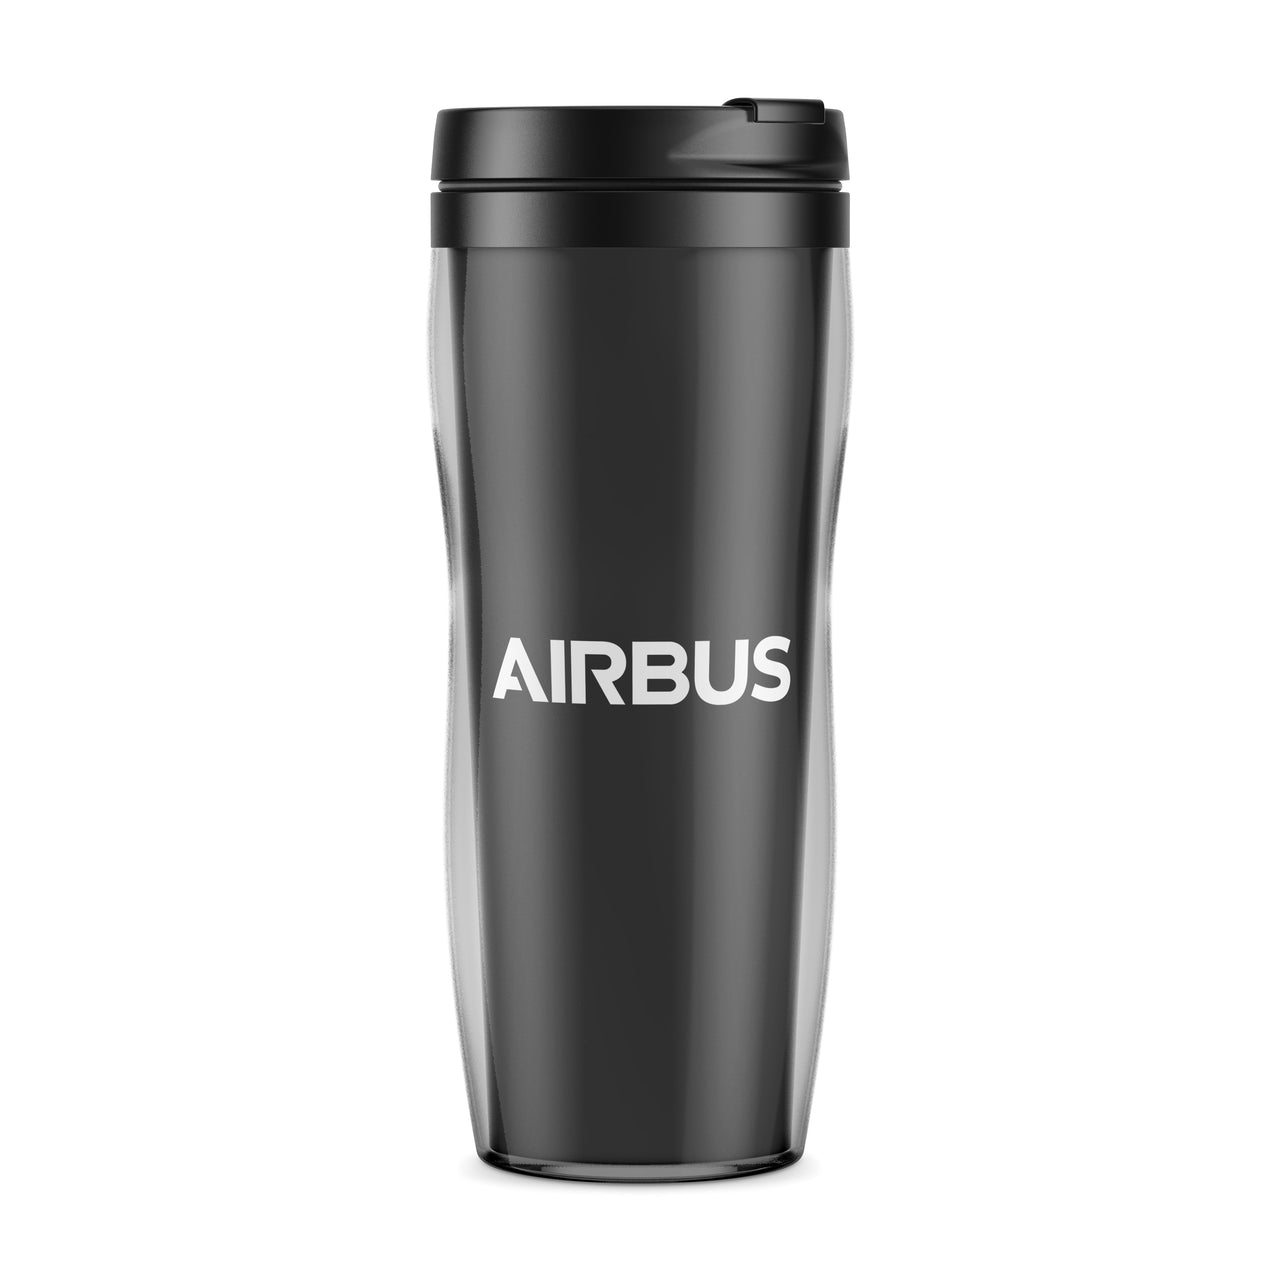 Airbus & Text Designed Plastic Travel Mugs